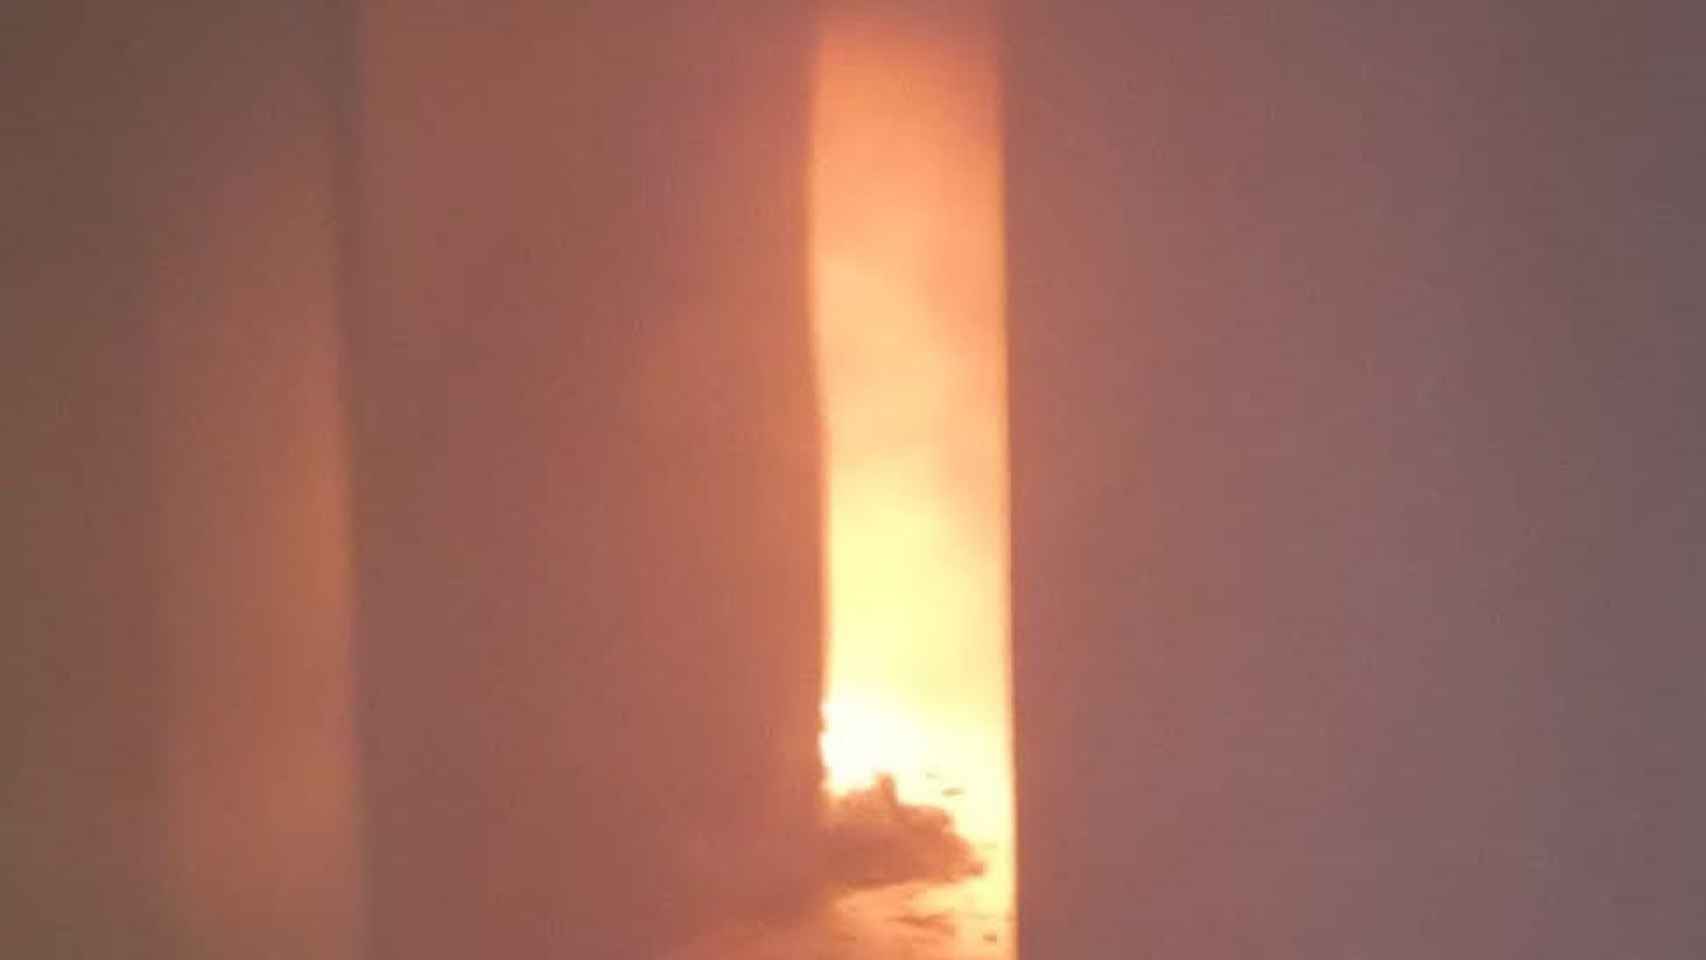 Imagen del incendio en Calella